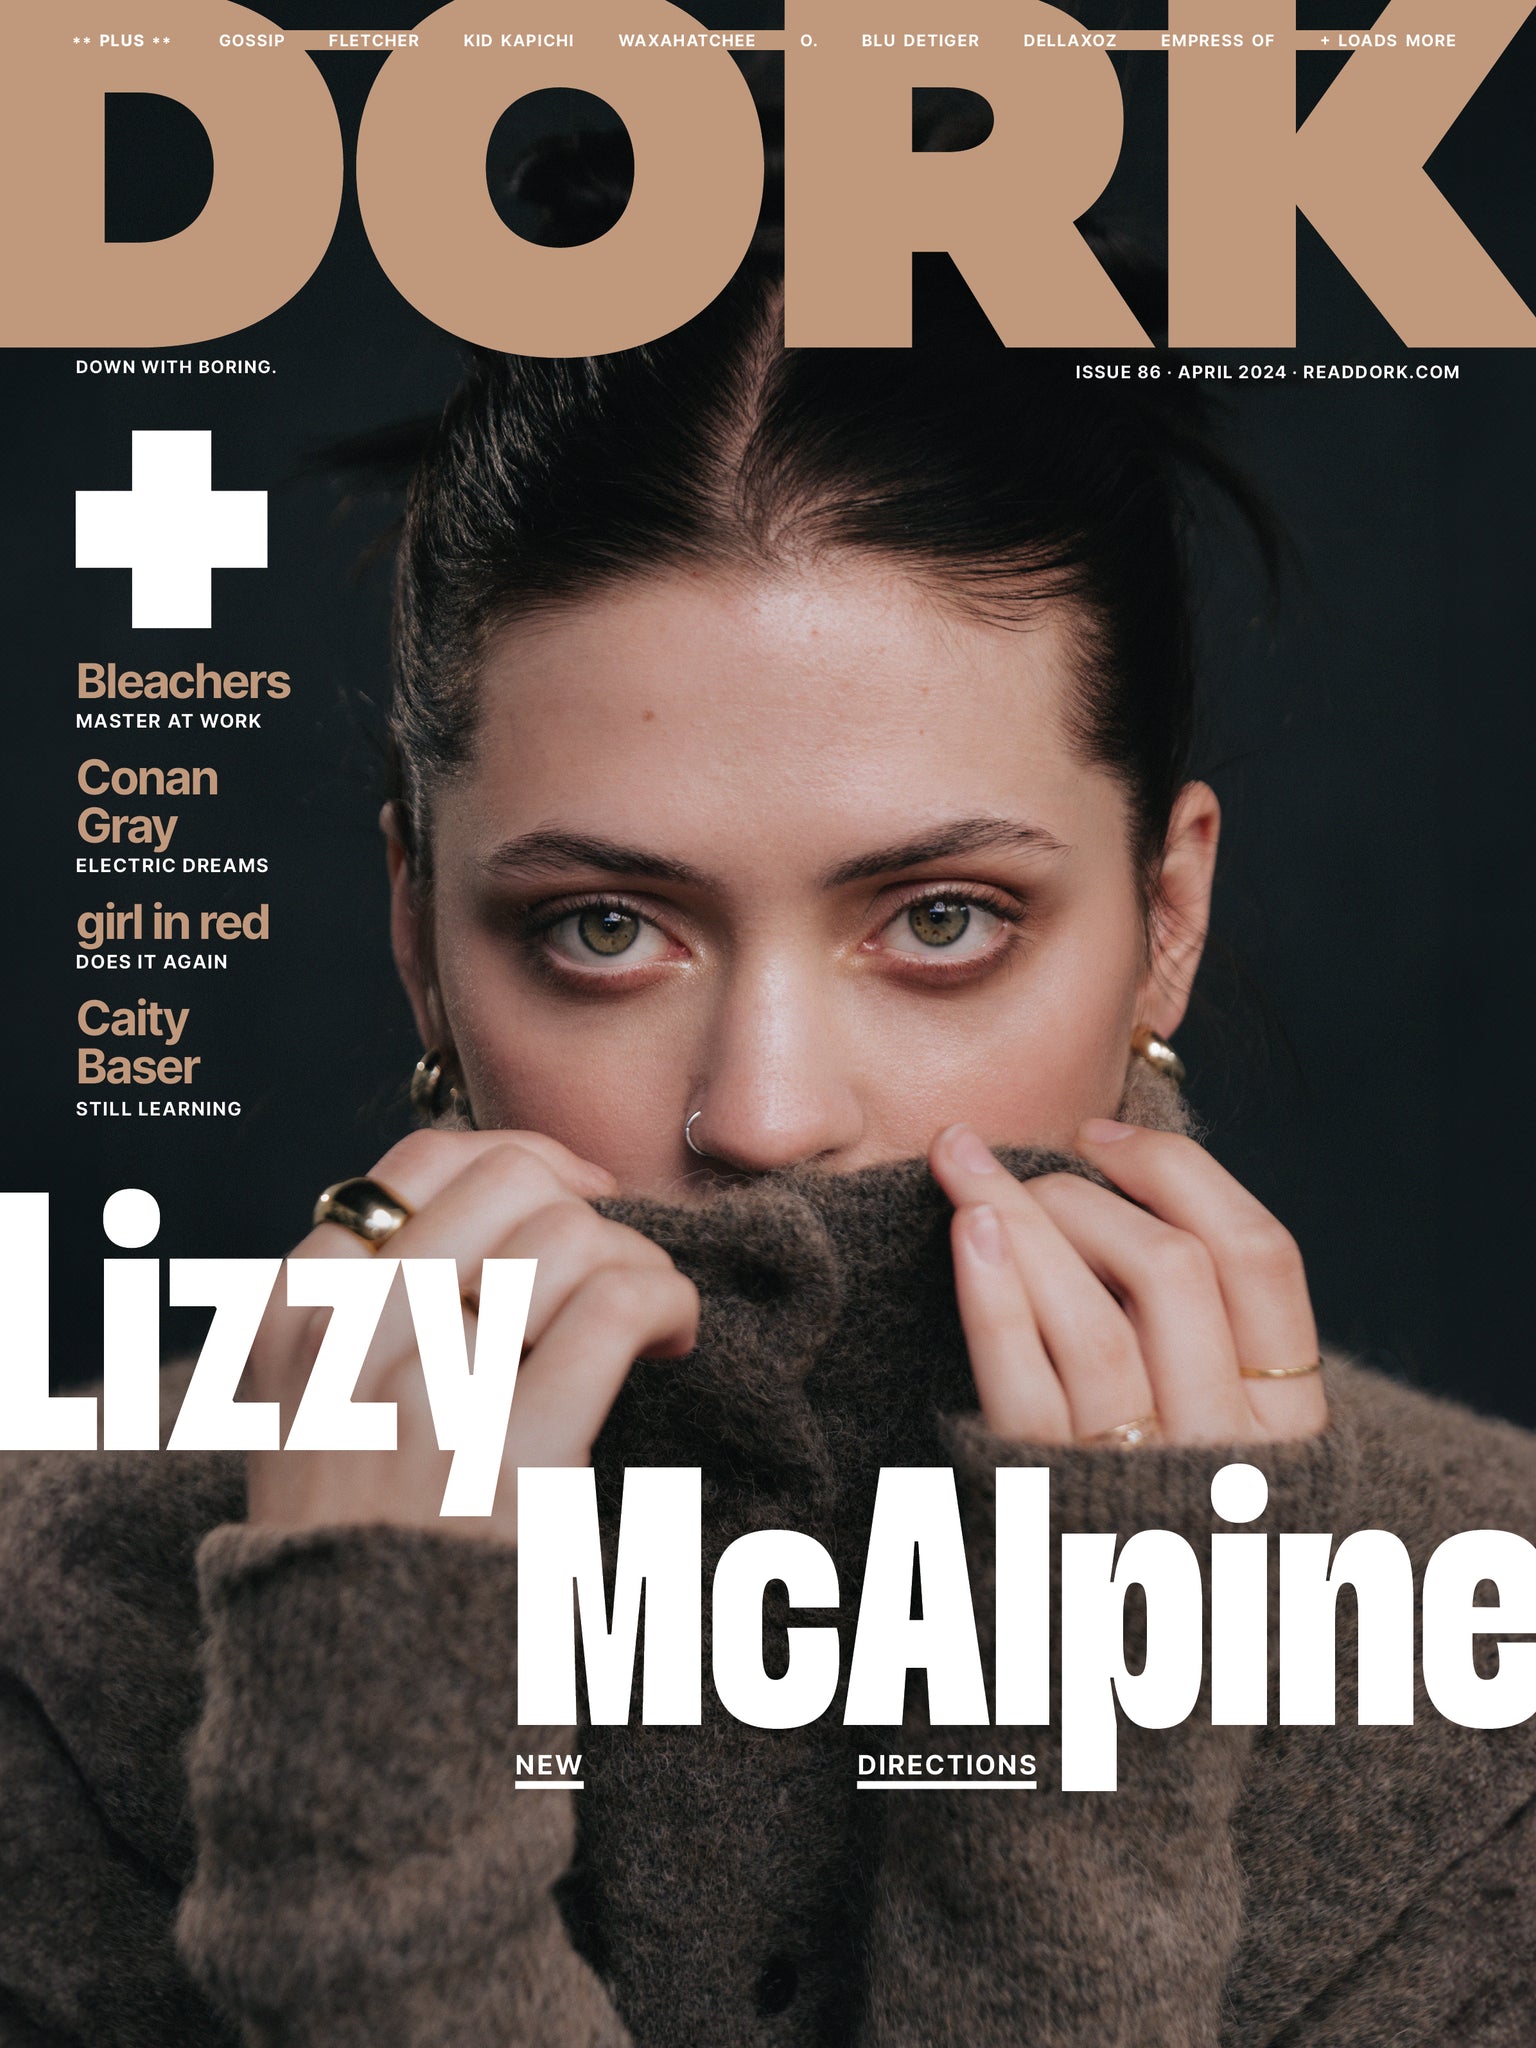 Dork, April 2024 (Lizzy McAlpine cover)